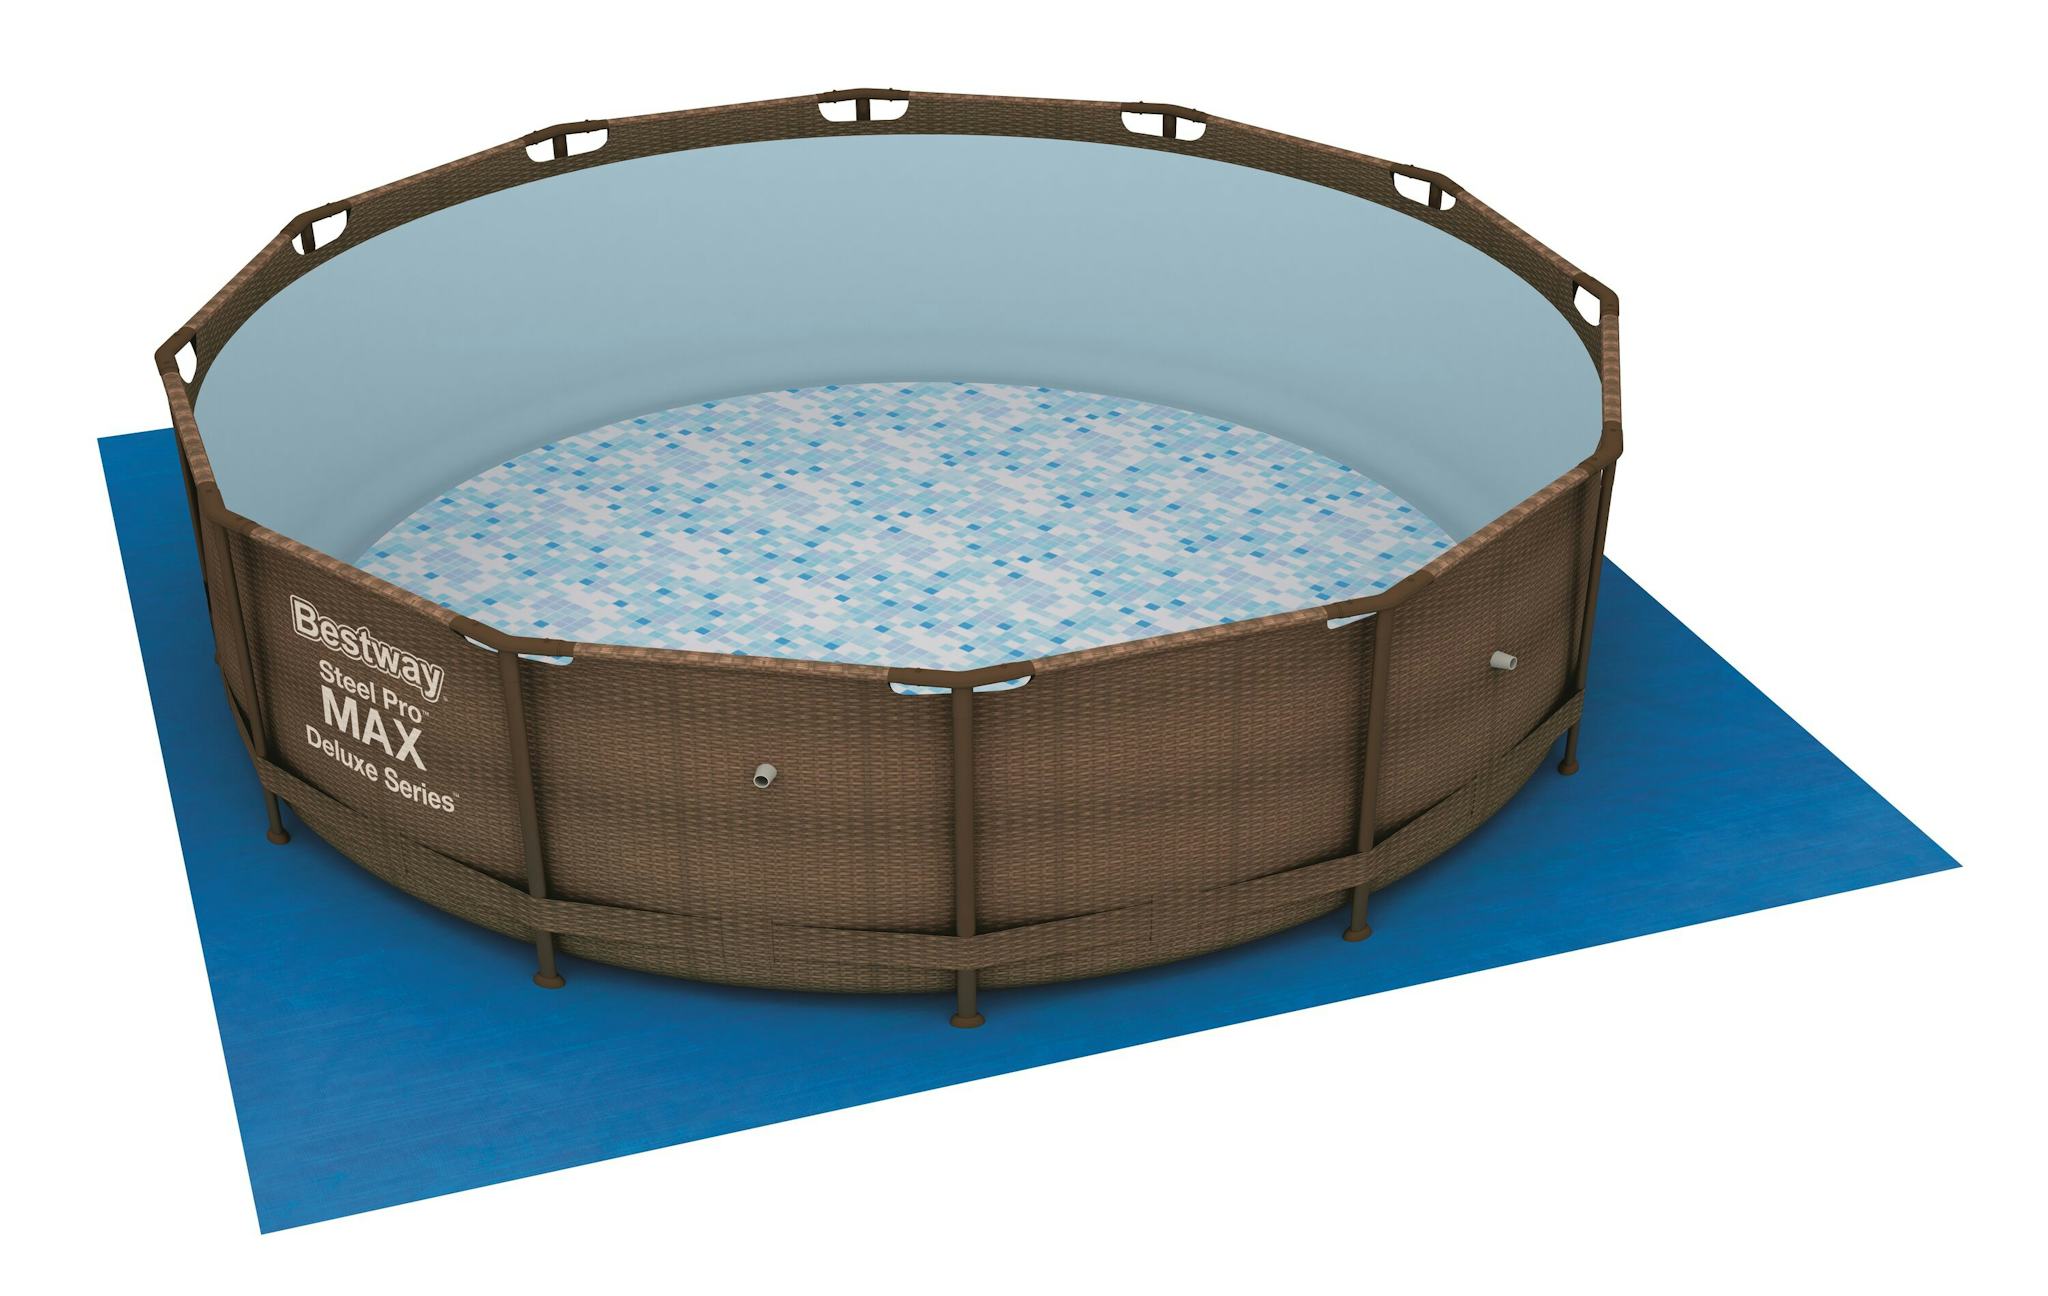 Accessoires piscine et spa Tapis de sol carré 396 x 396 cm pour piscine hors sol Fast Set™, Steel Pro™, Steel Pro Max™ et Hydrium™ 366 cm Bestway 7